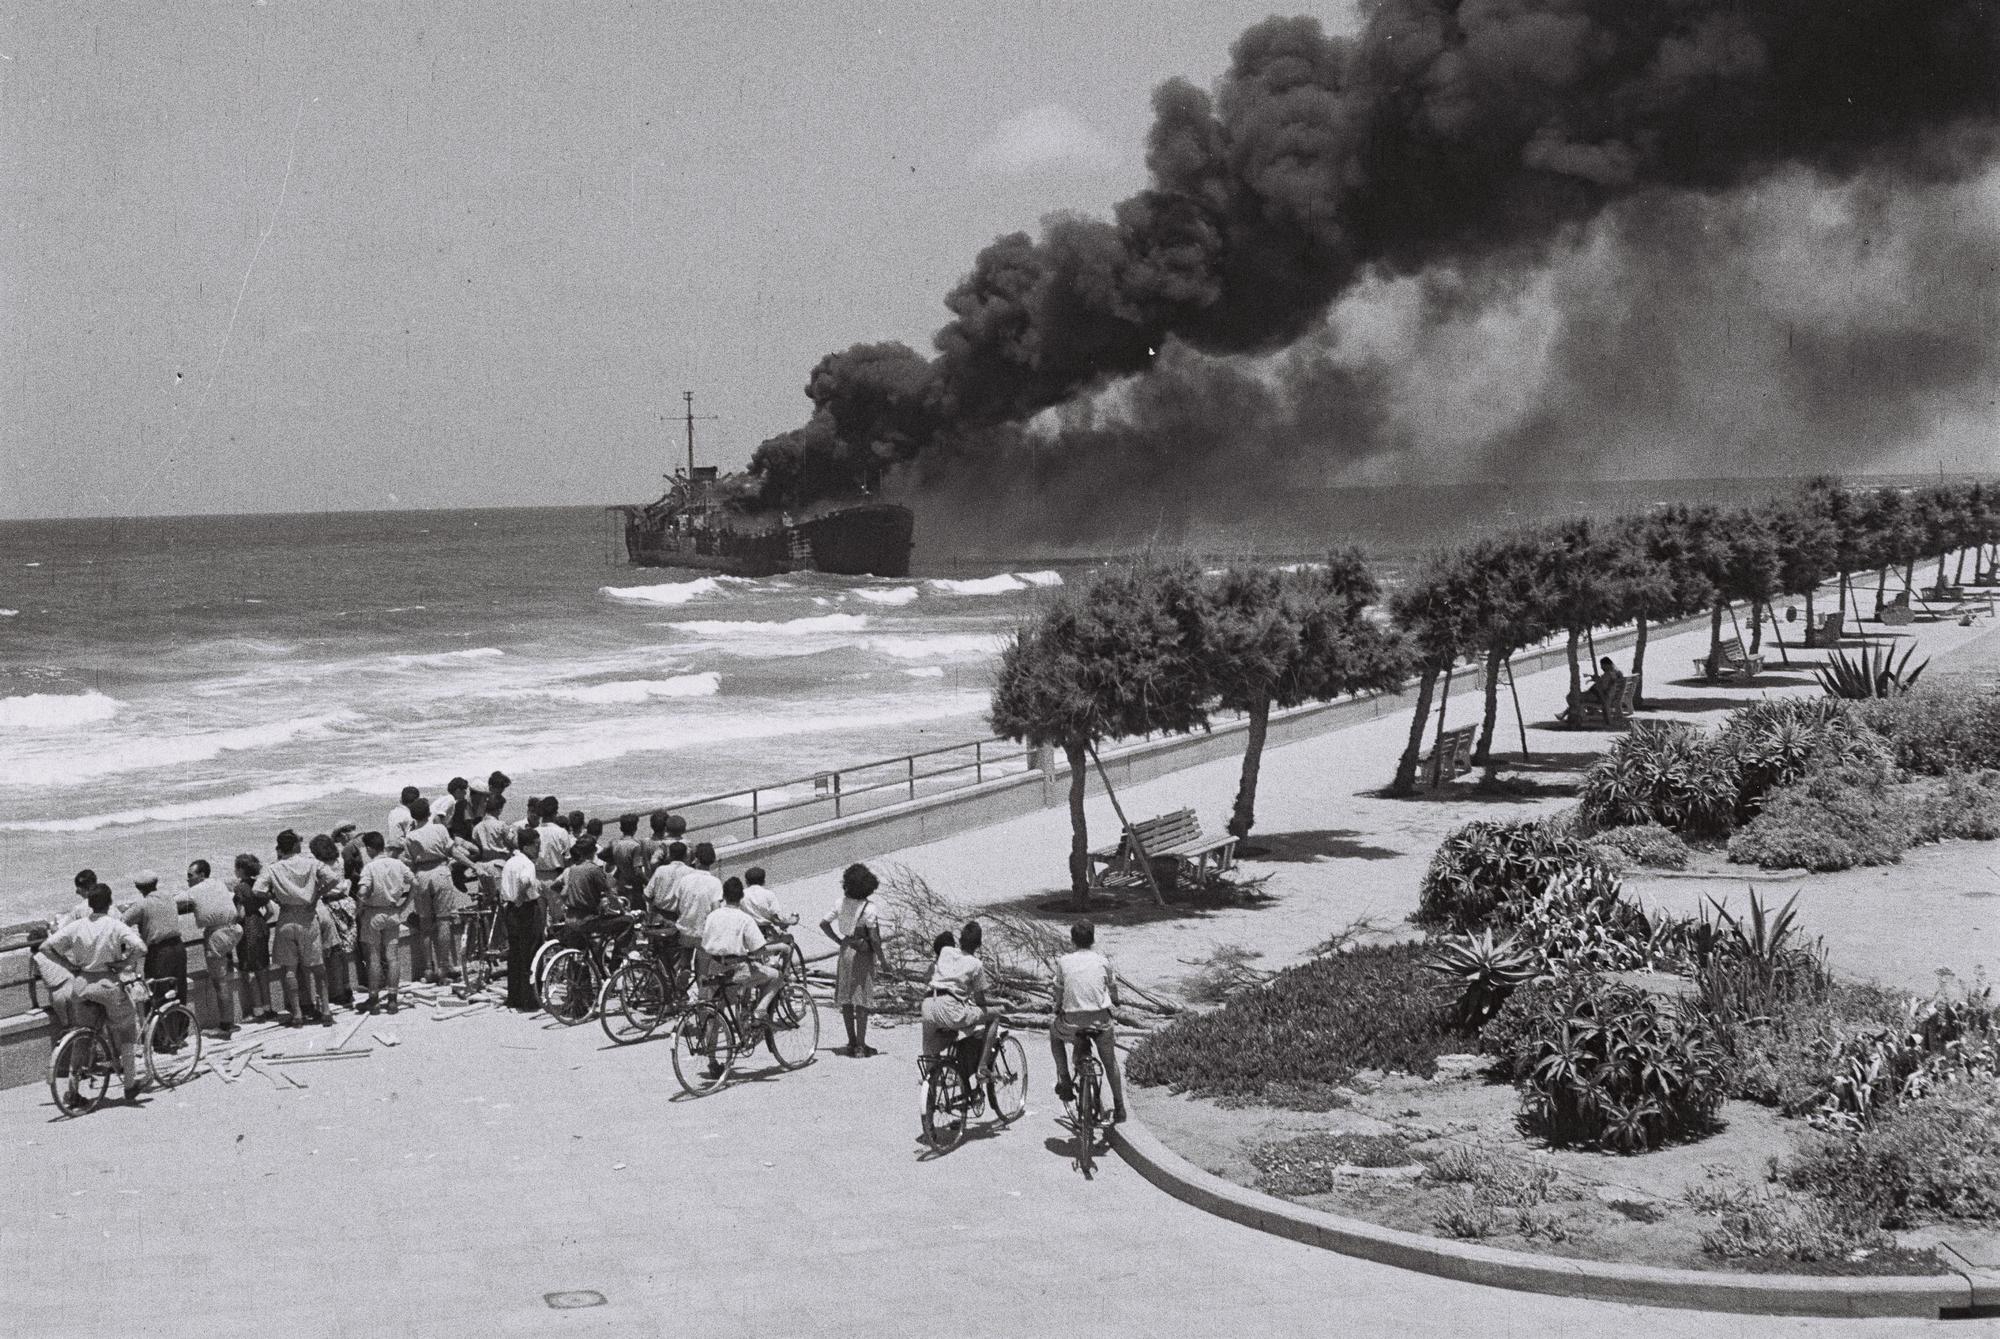 1948. Tel Aviv lakosai nézik az IDF által lebombázott Irgun részére fegyvert szállító teherhajót. A fiatal Izrael legnagyobb belpolitikai nézeteltérése az IDF győzelmével ért véget..jpg